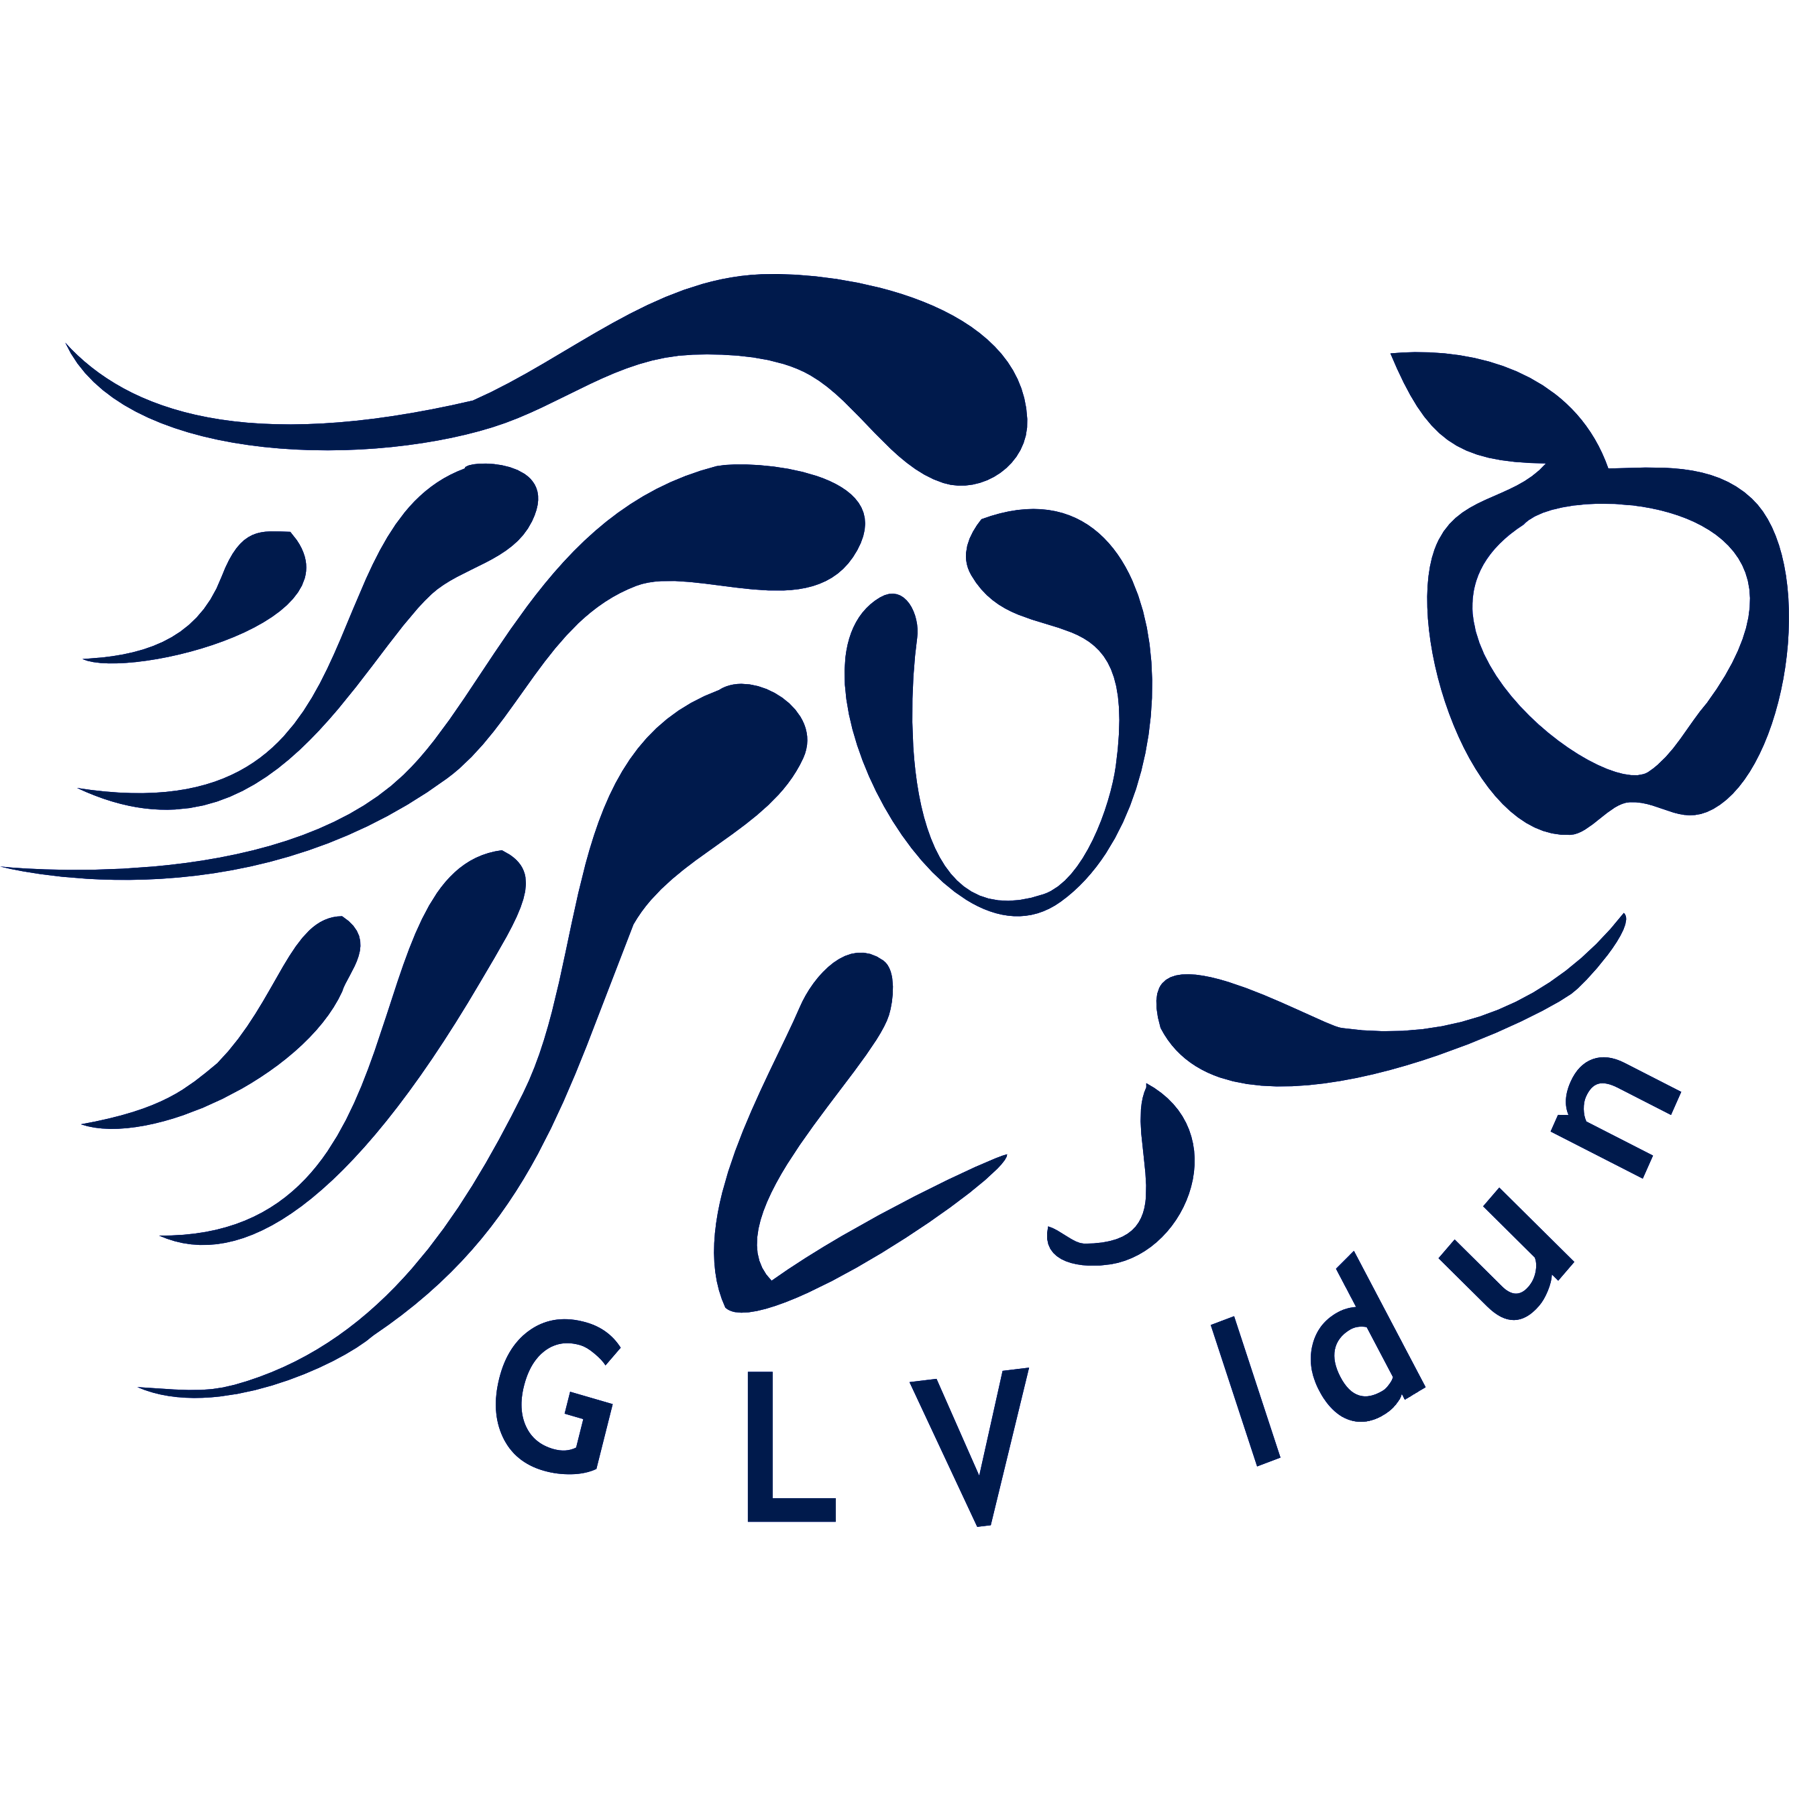 GLV Idun